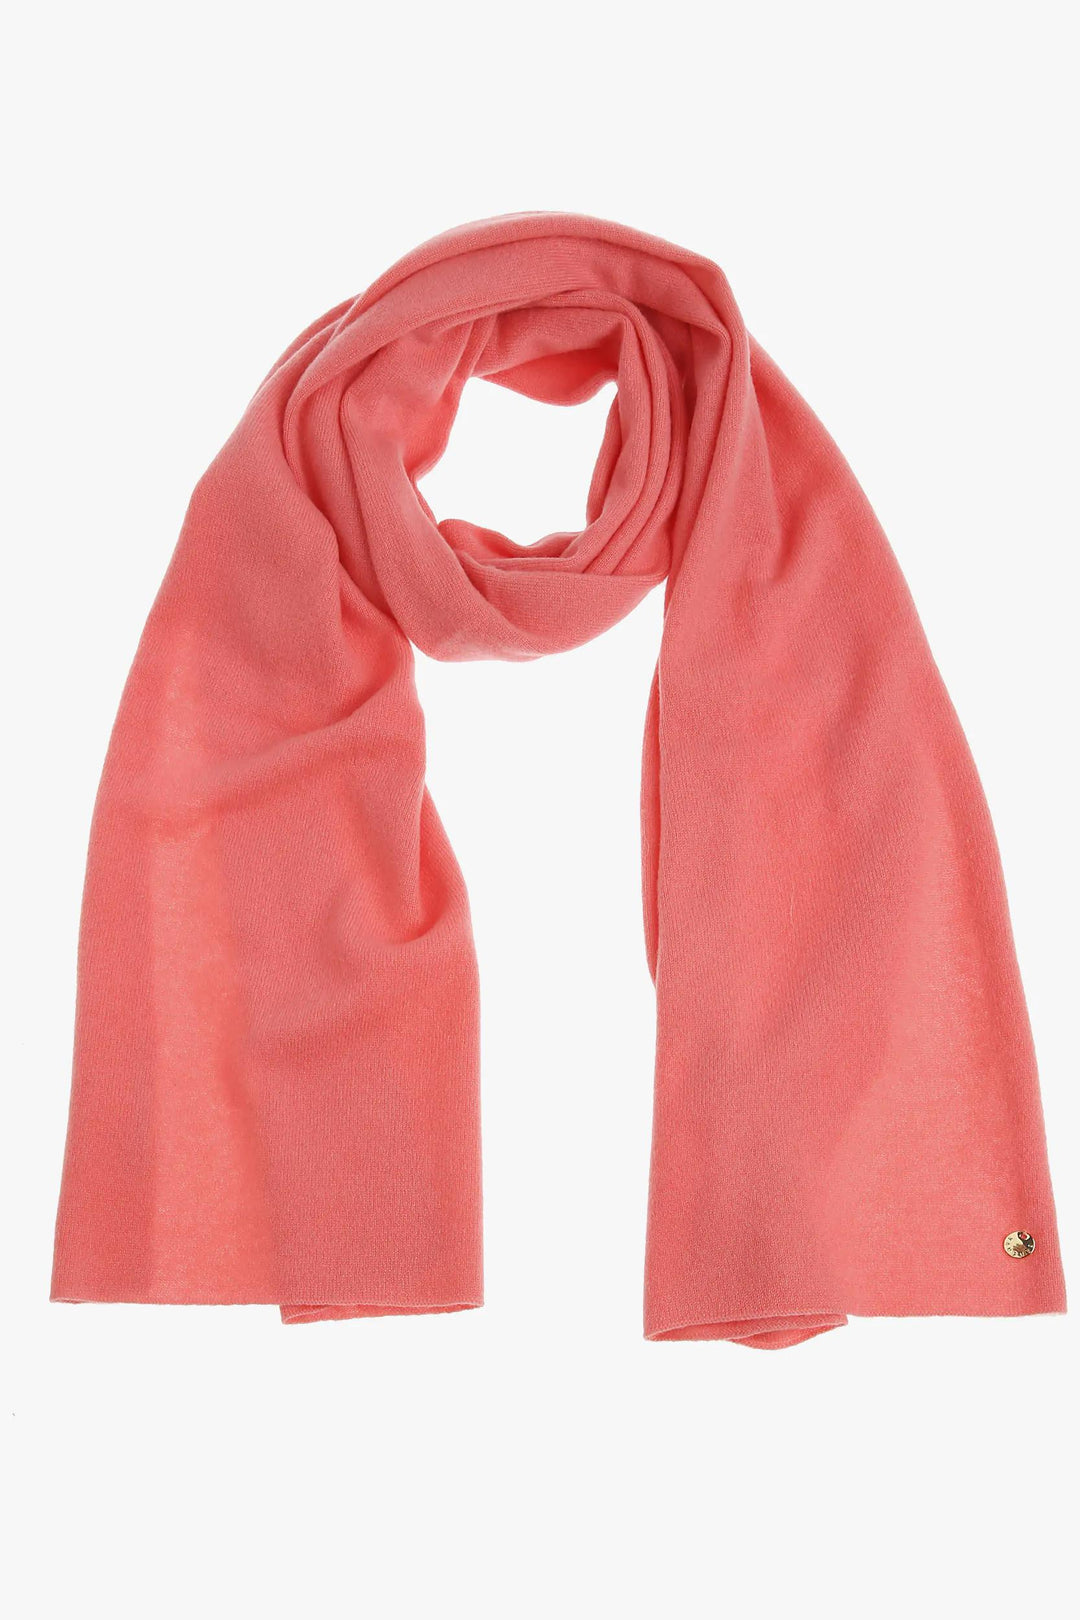 roze sjaal in kasjmier - xandres - kalki-roos - grote maten - dameskleding - kledingwinkel - herent - leuven